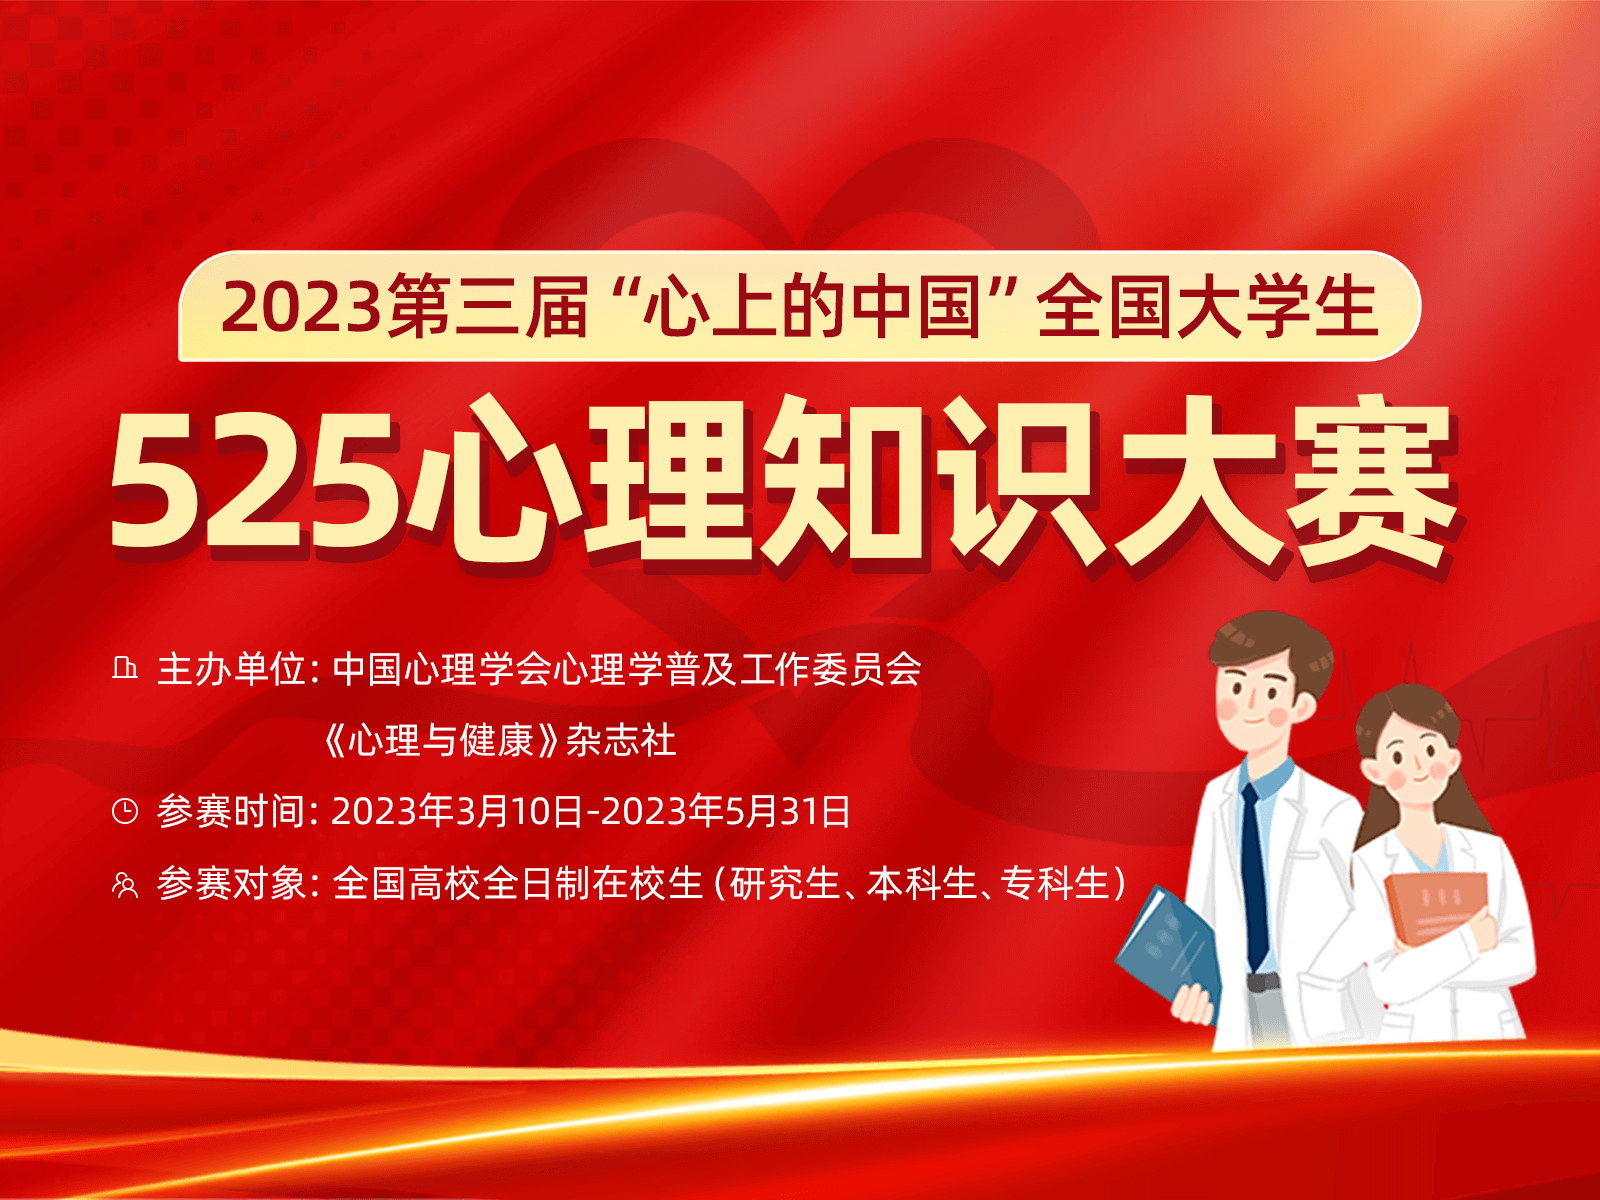 2023第三届“心上的中国”全国大学生525心理知识大赛-h5头图800x600px.png